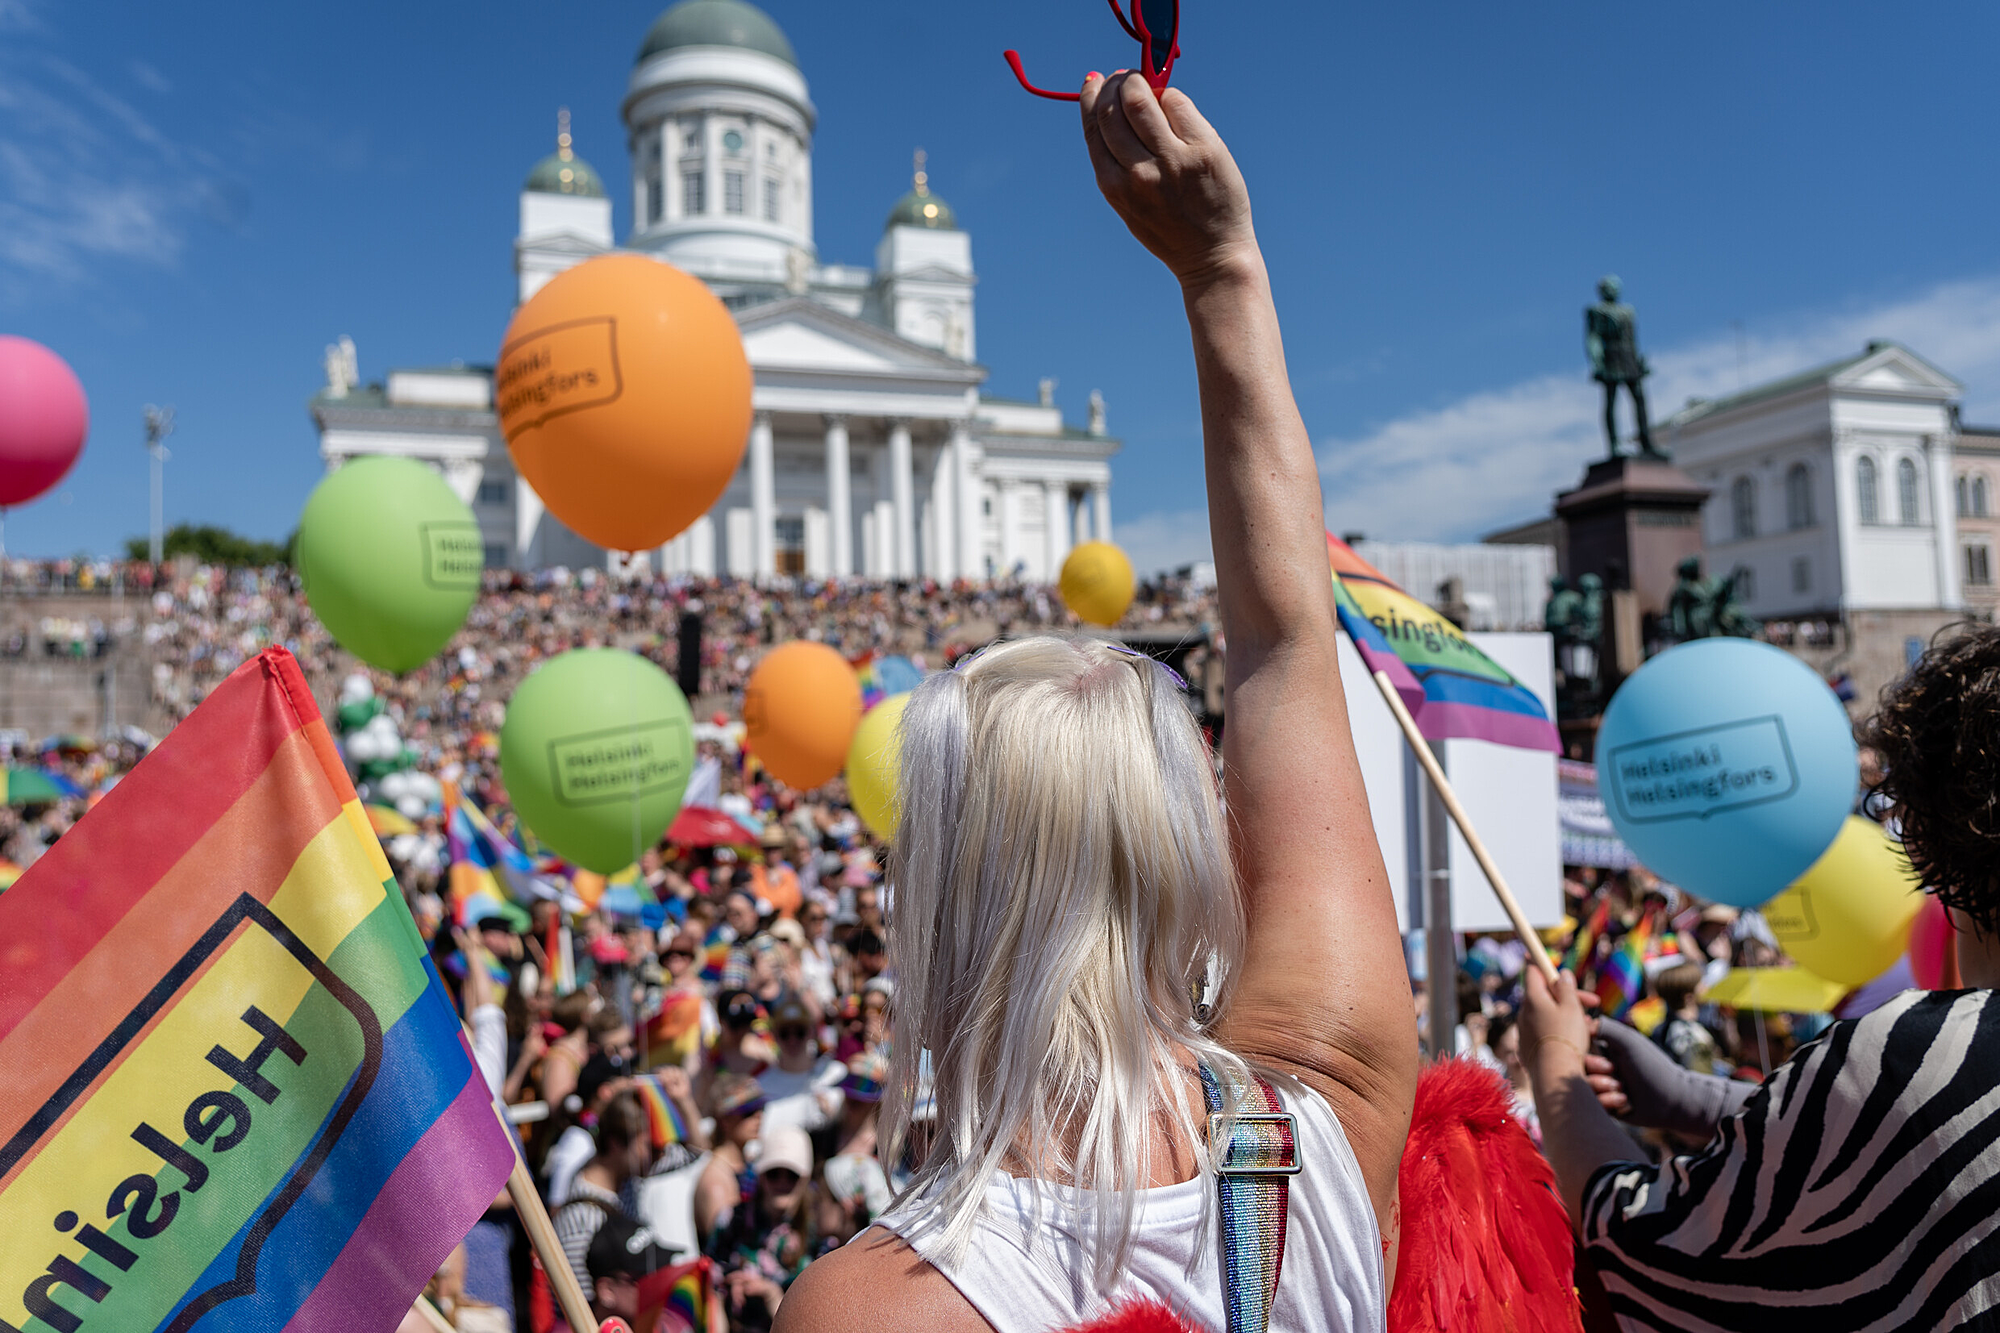 Regnbuer i nord: Helsinkis omfavnelse af kærlighed, lys og frihed